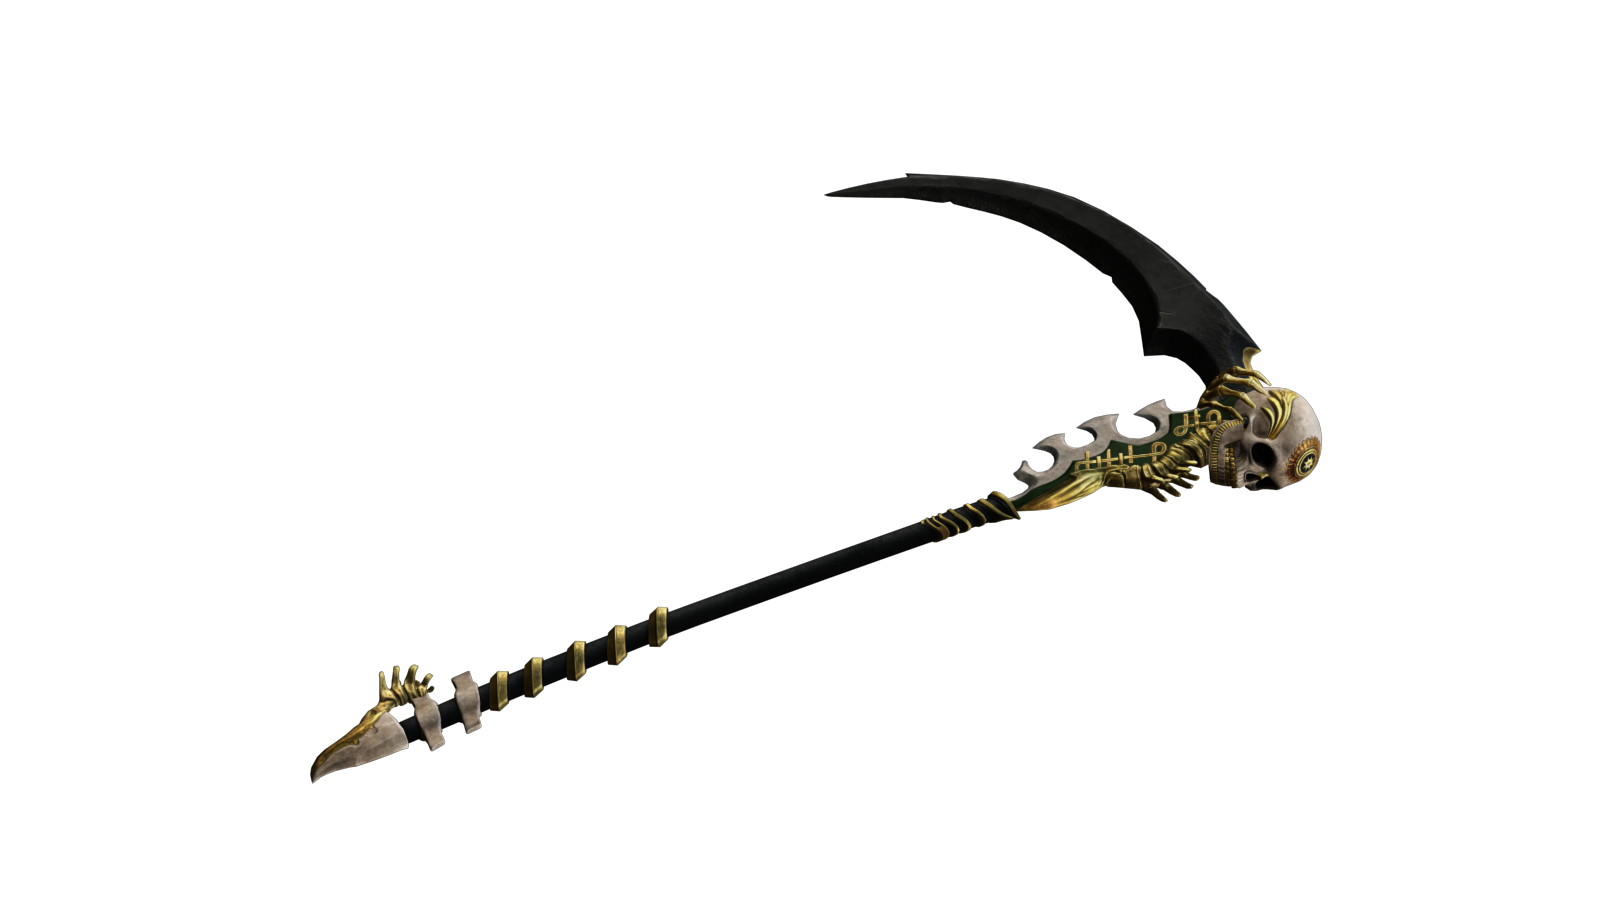 grim reaper scythe real